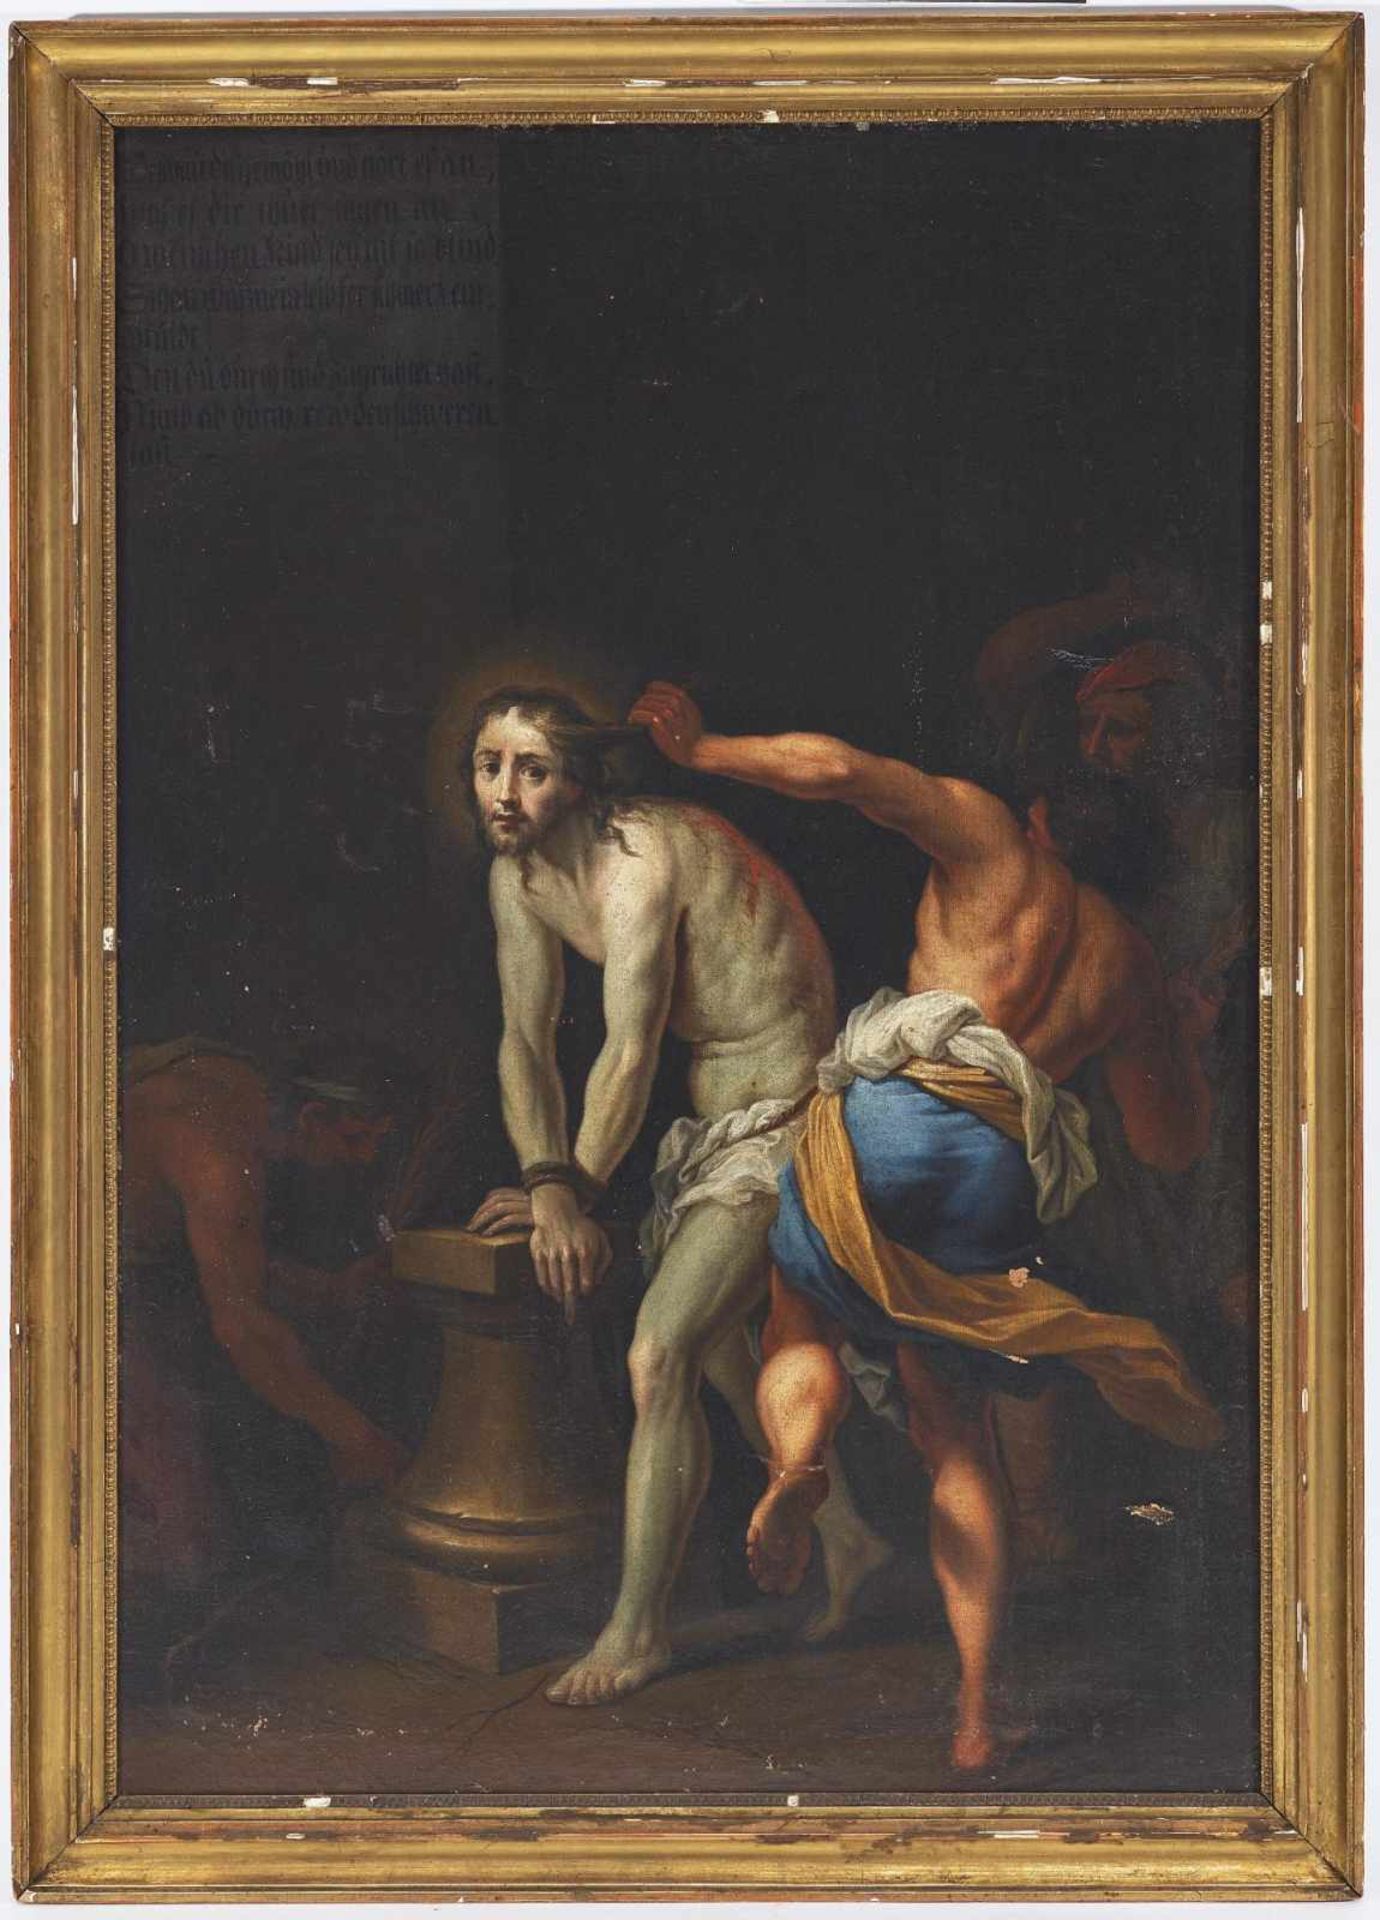 SCHWABEN (AUGSBURG) 18. Jh. Die Geißelung Christi L. o. bezeichnet. Öl auf Lwd. 144 x 99,5 cm. - Bild 2 aus 2